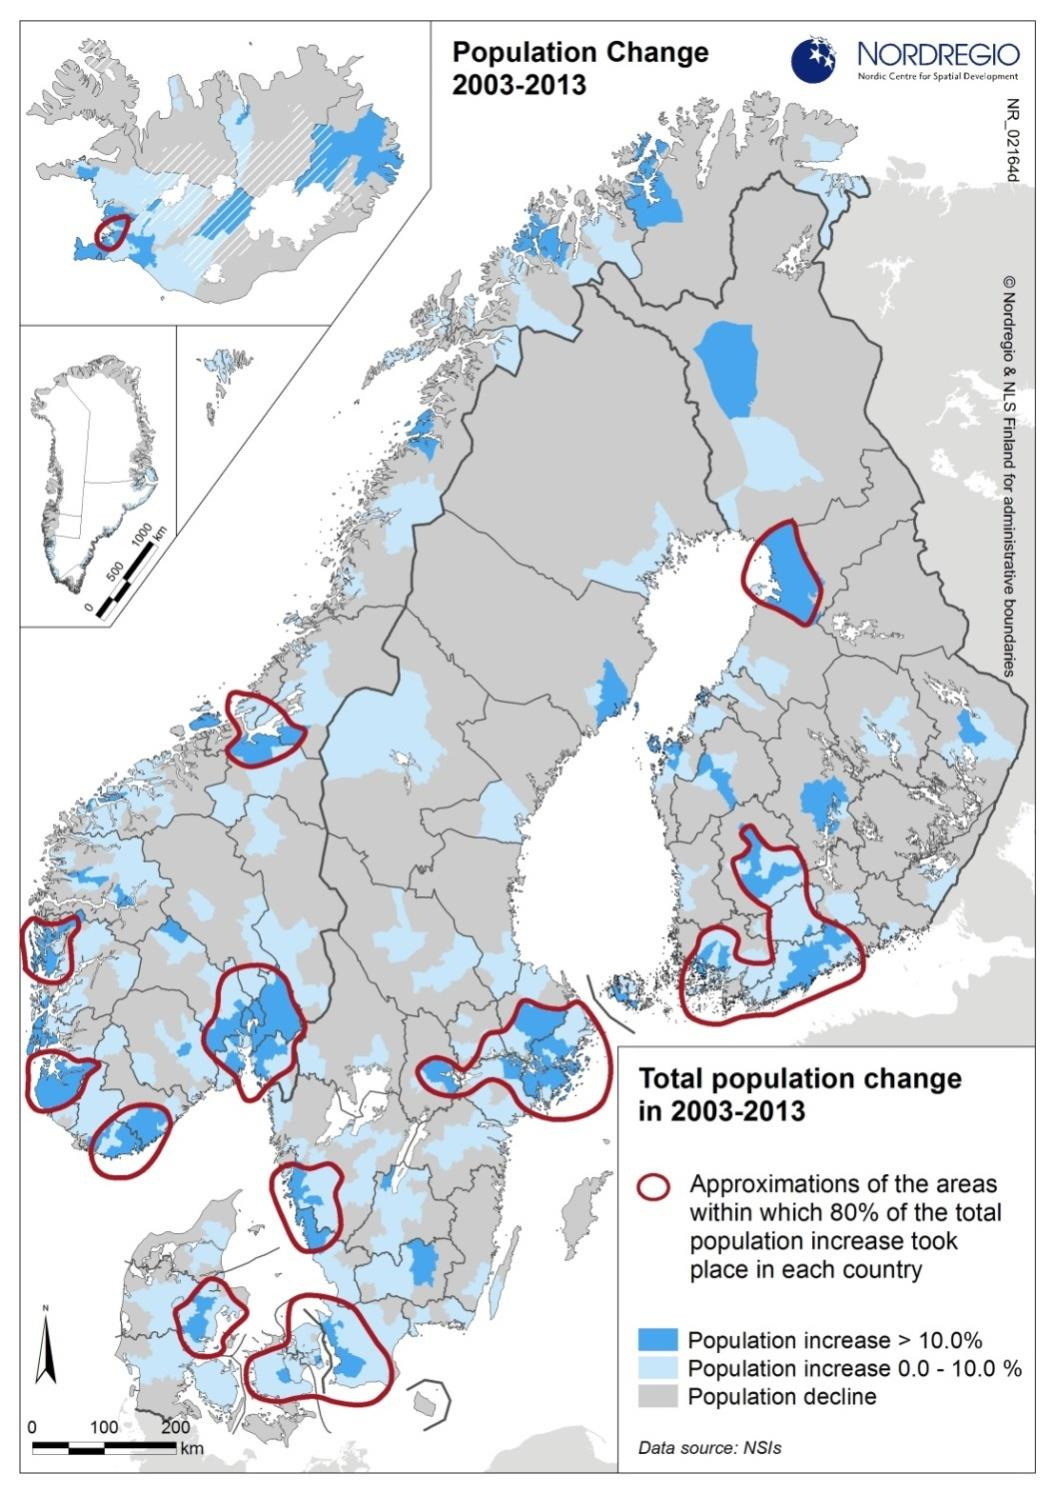 Norge i et nordisk perspektiv Kartet viser at det har vært mer geografisk spredning i befolkningsveksten i Norge enn i de andre